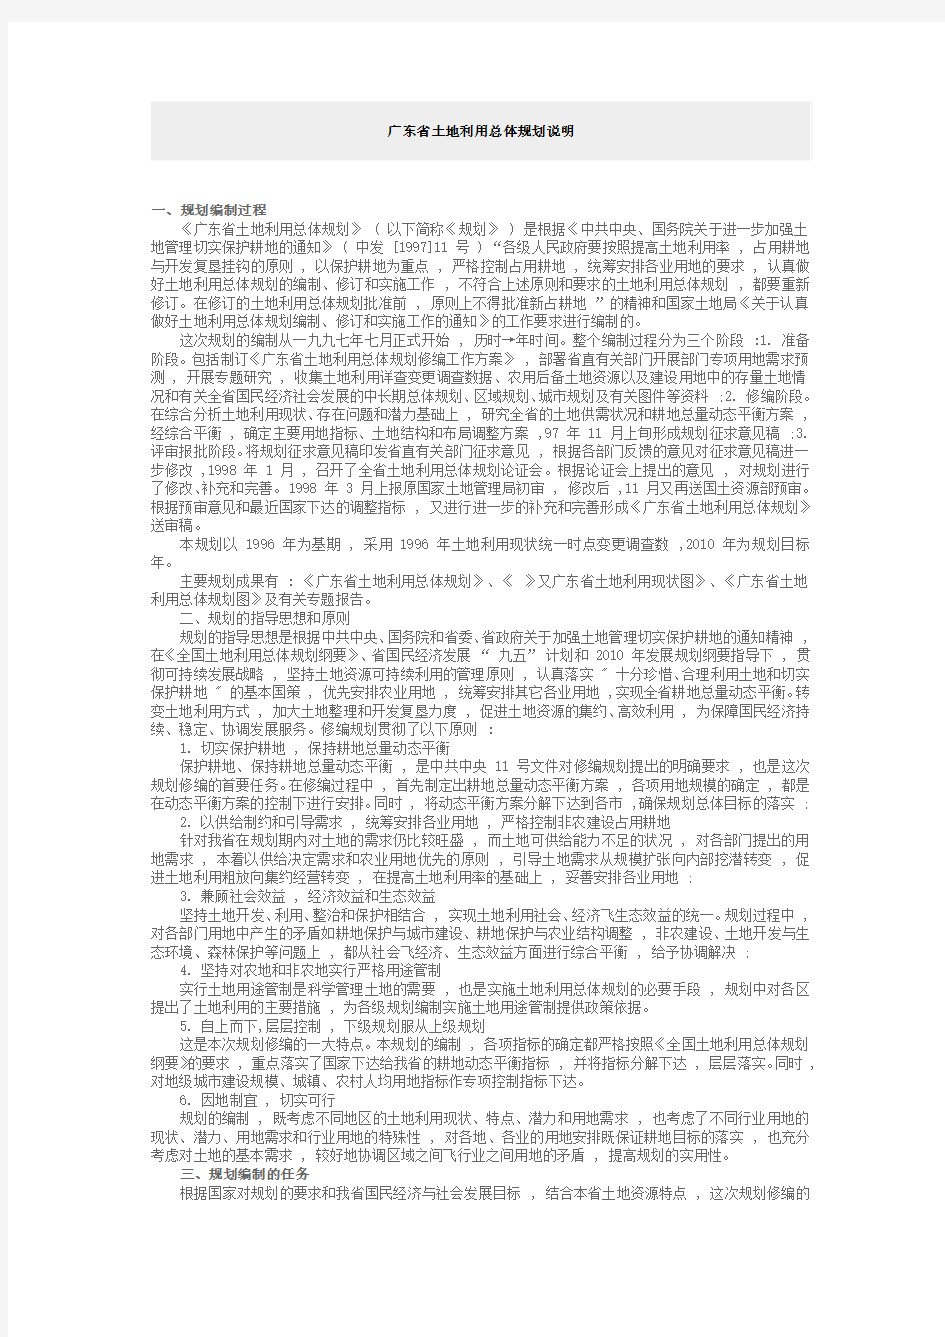 广东省土地利用总体规划说明 20101123